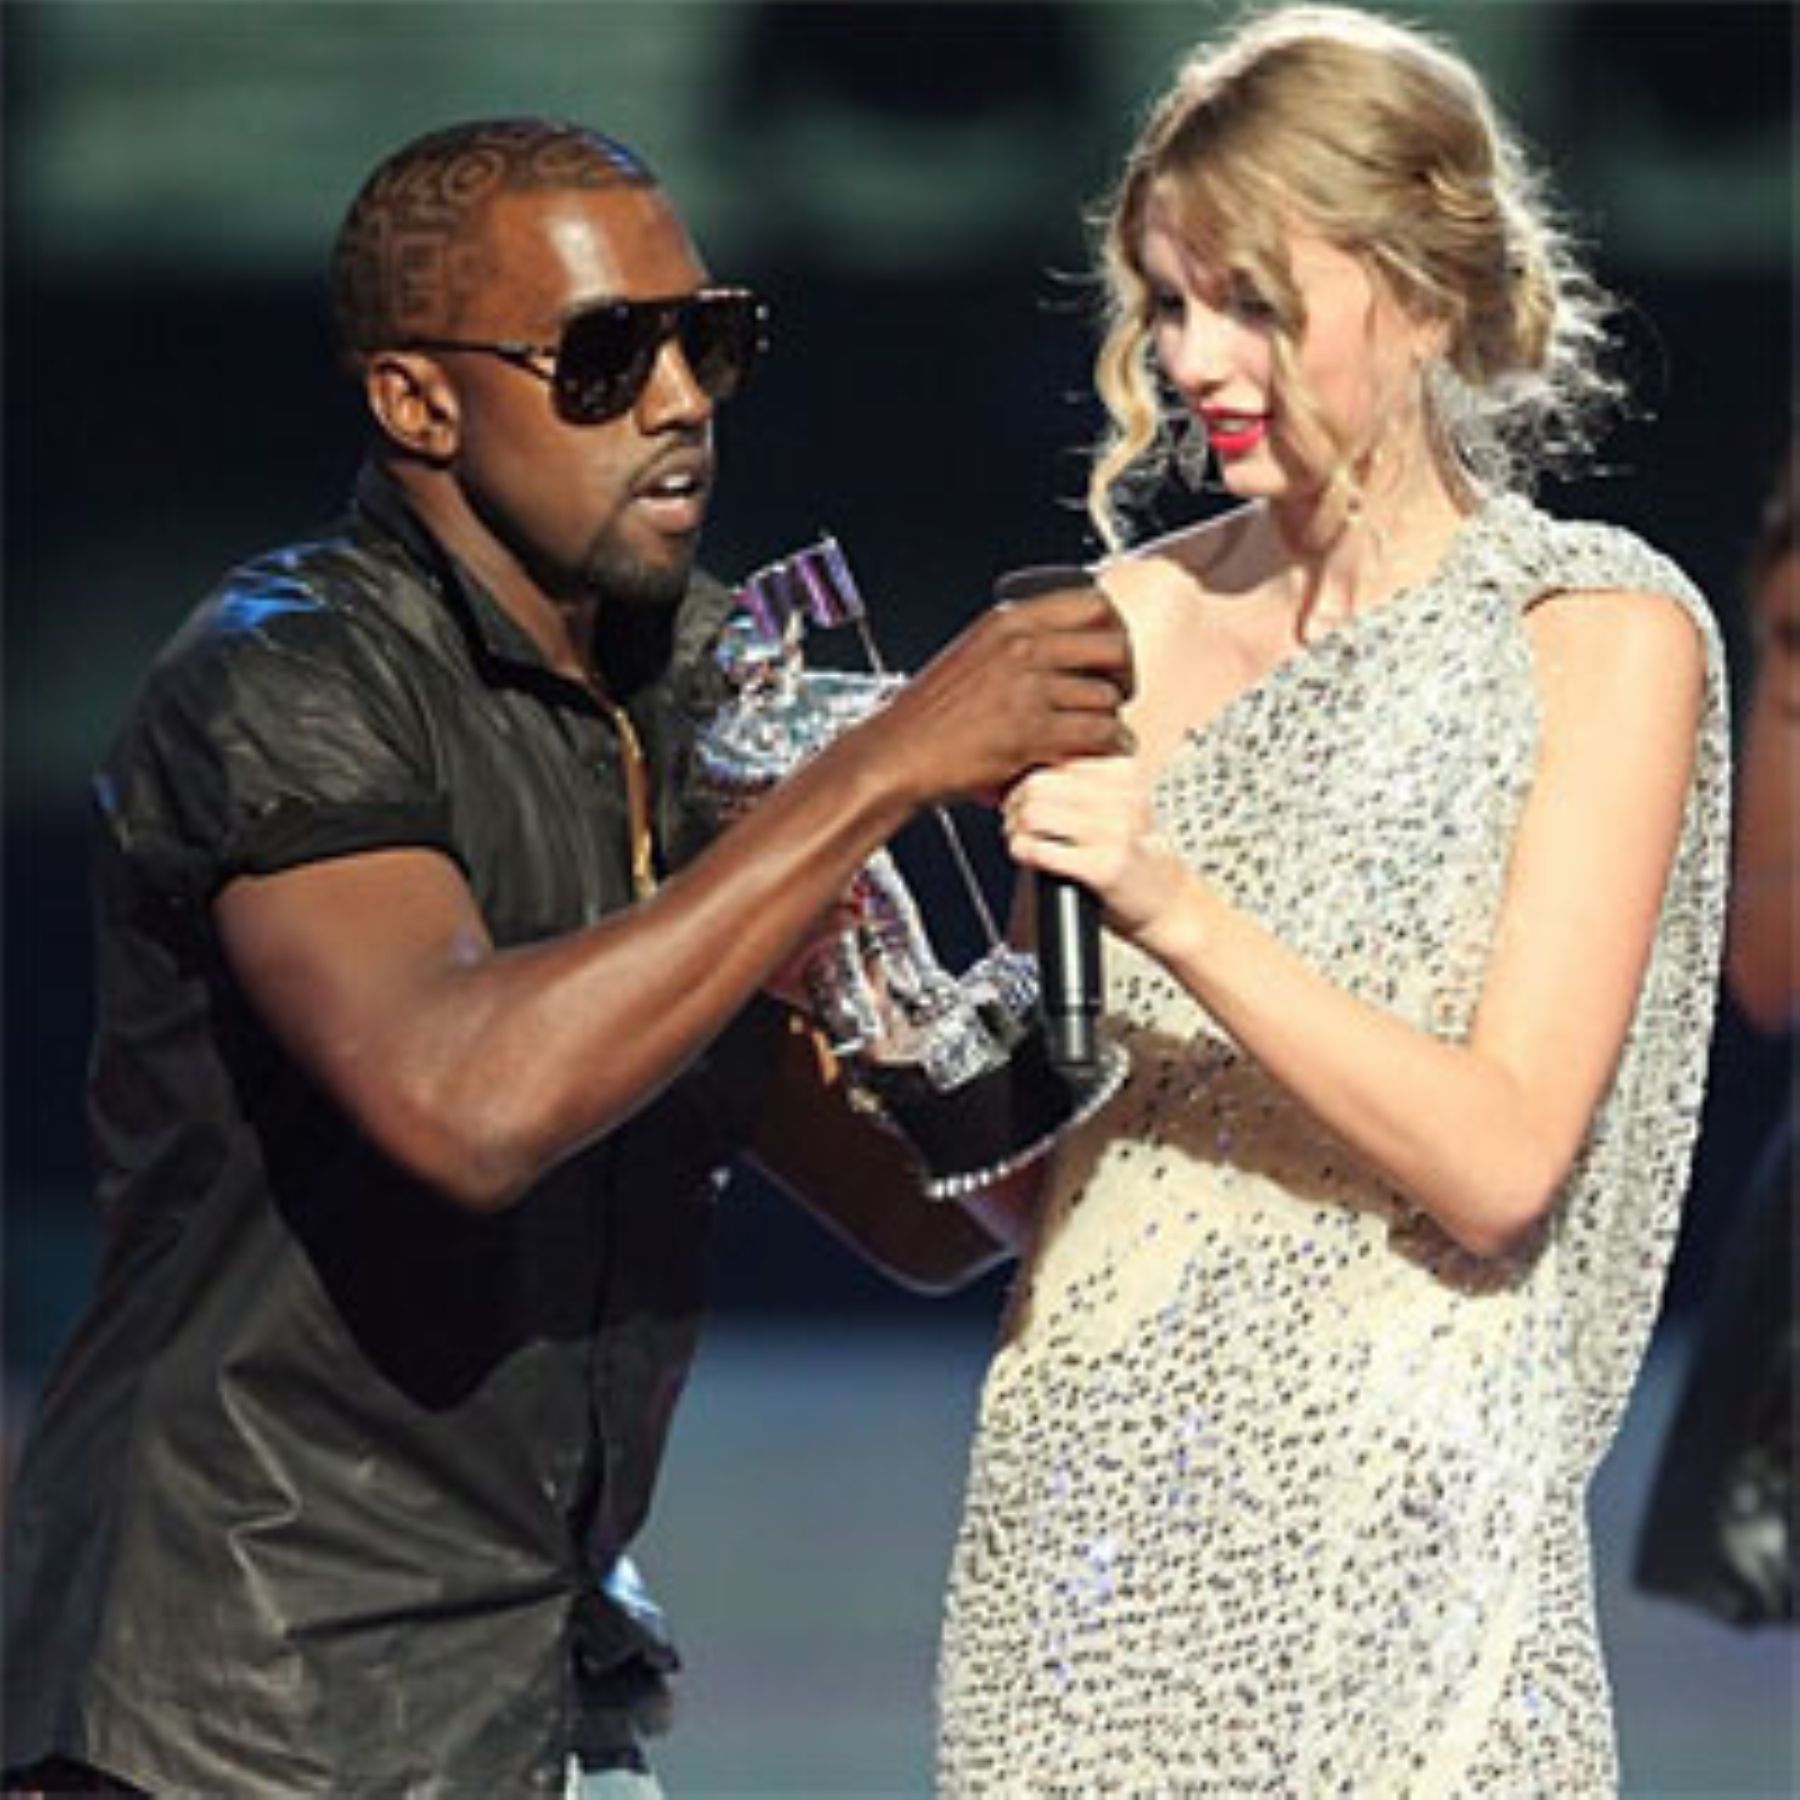 El rapero Kanye West, que interrumpió a la ganadora de MTV Awards Taylor Swift porque estaba en desacuerdo con su premiación, fue ahora objeto de broma pesada en Twitter. Alguien escribió que había muerto.